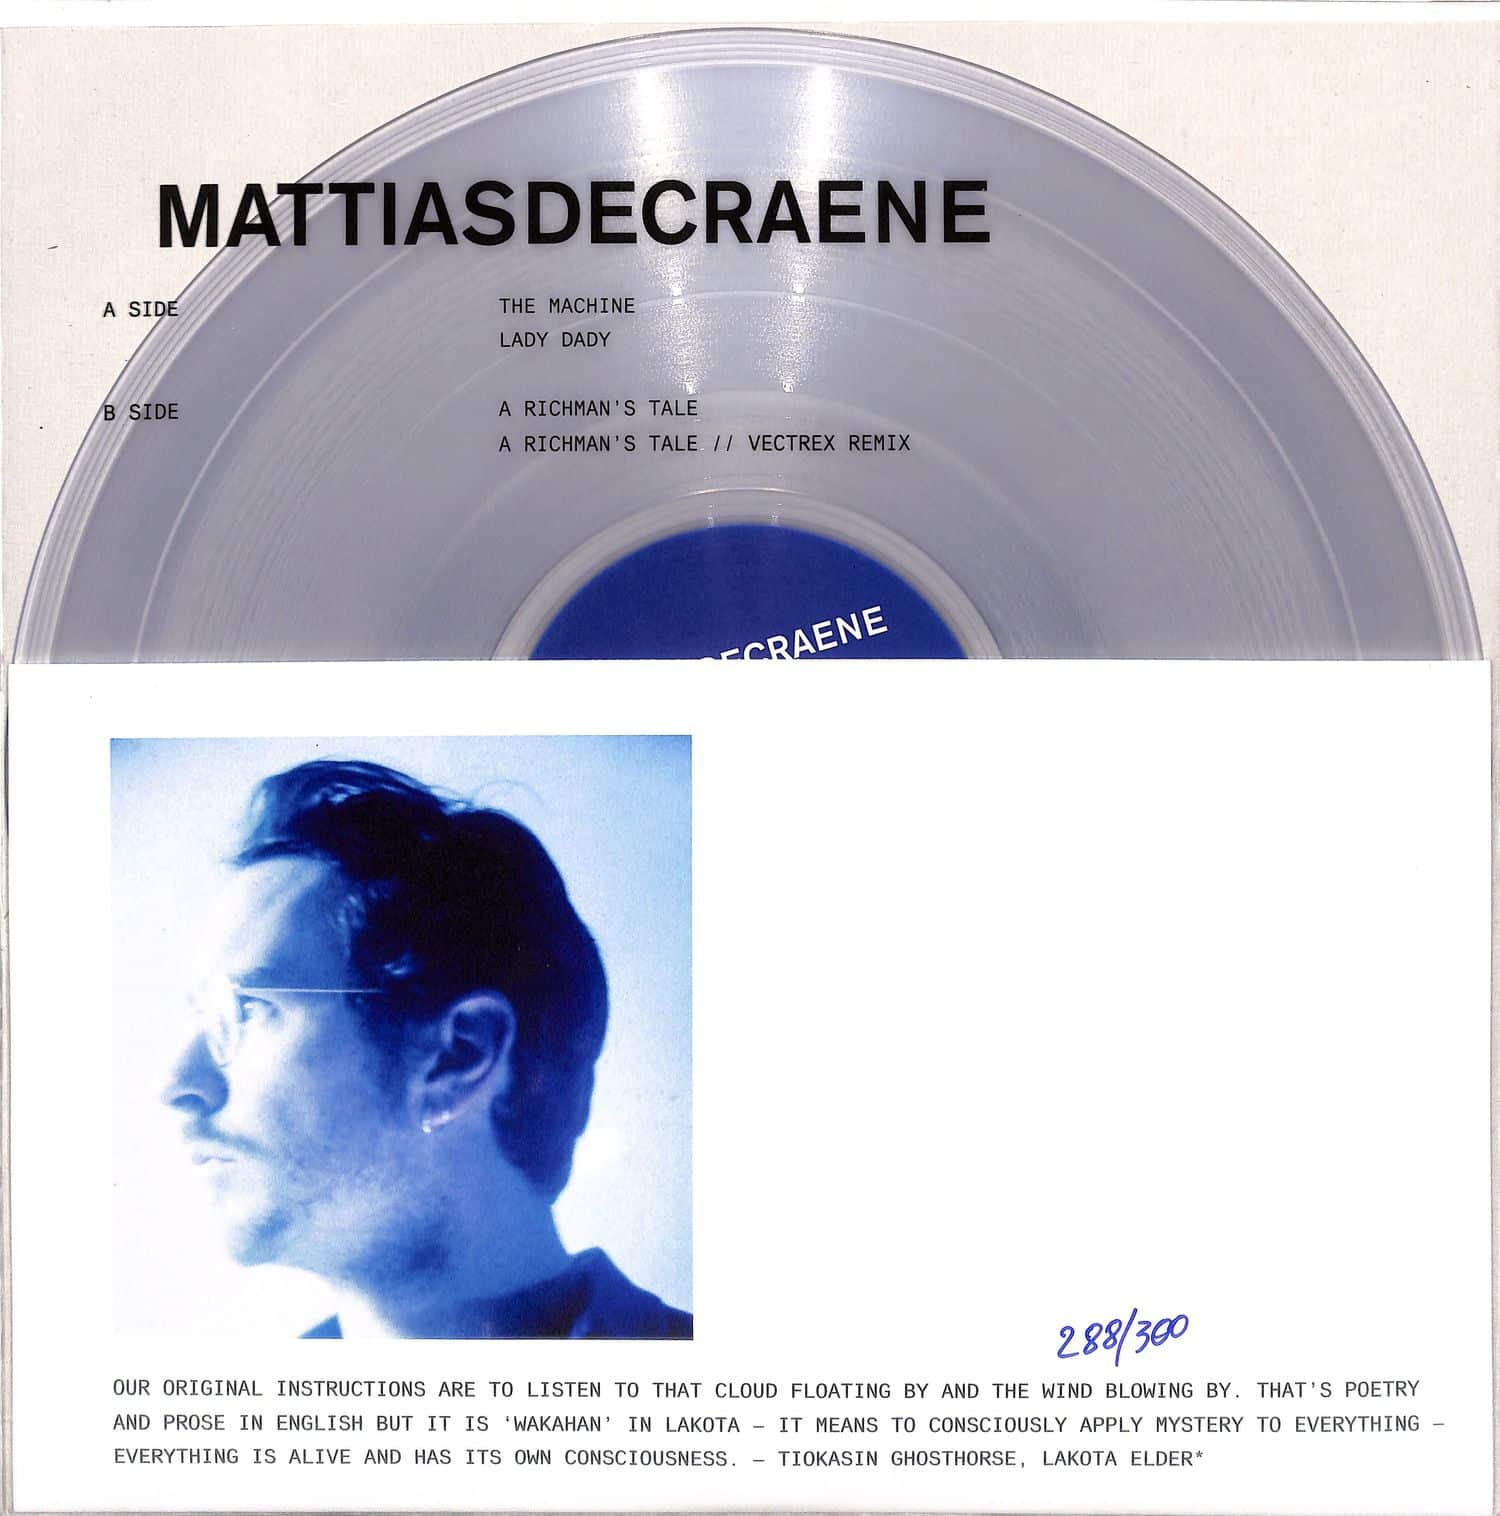 Mattiasdecraen - MATTIASDECRAENE 